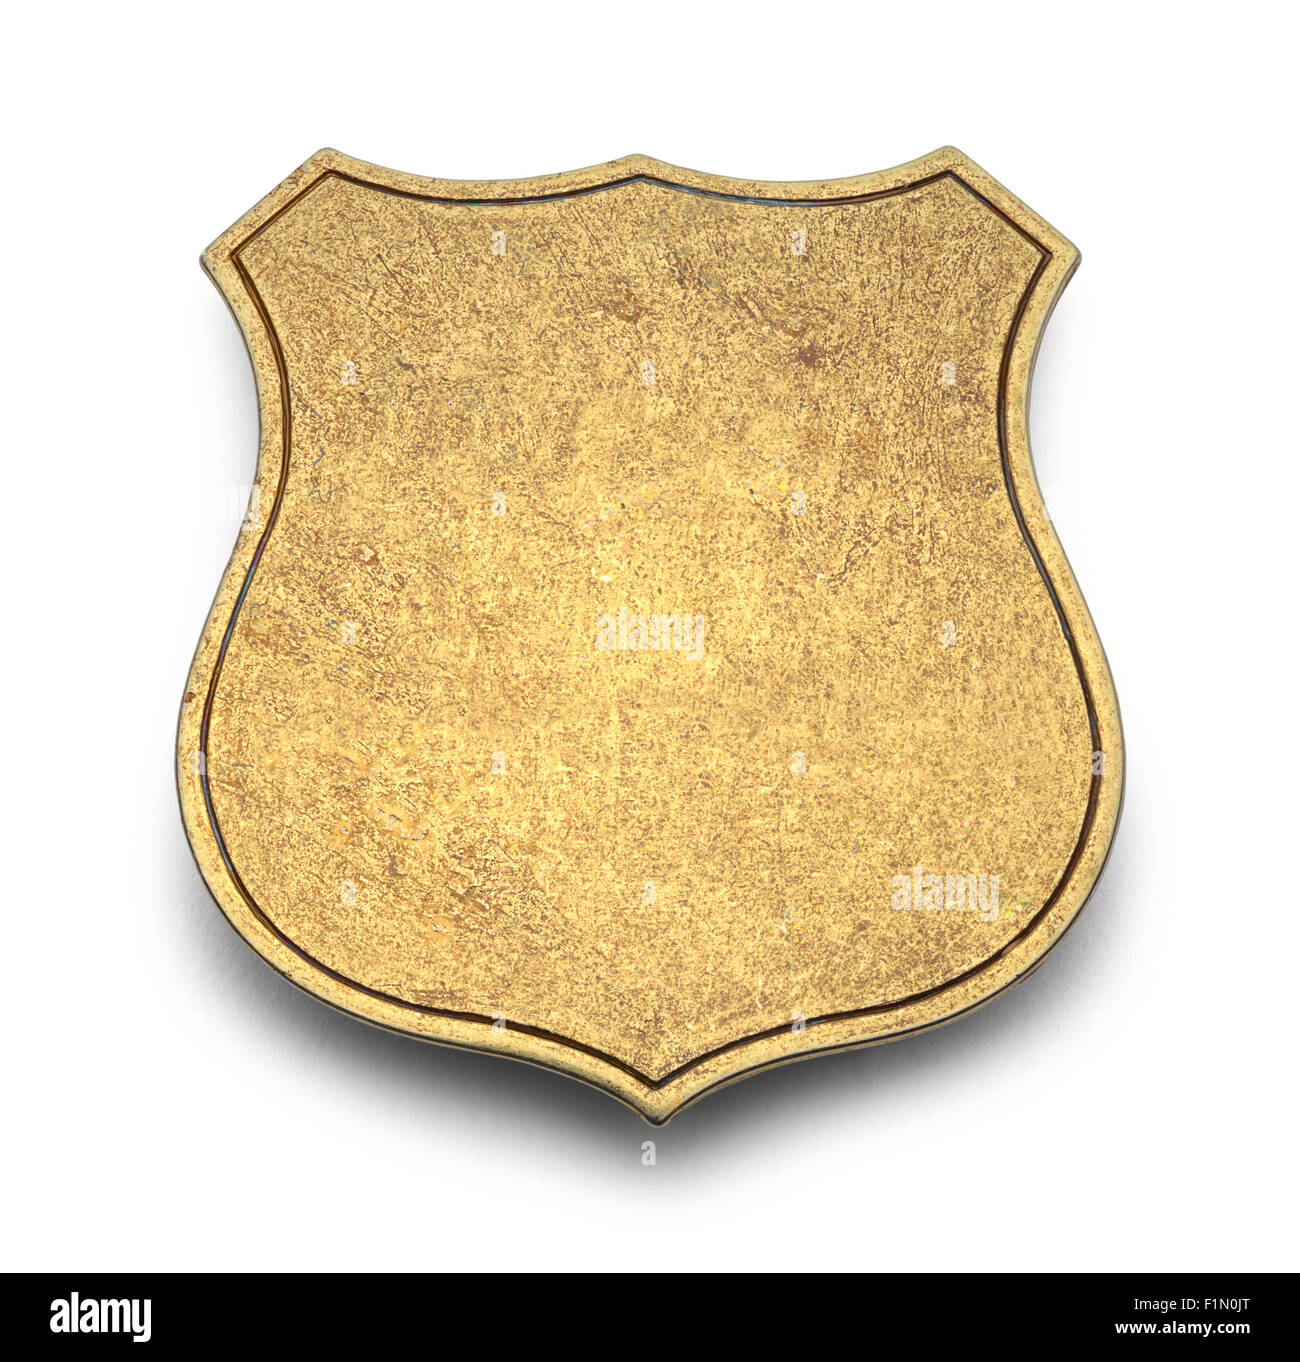 Goldenen Schild Abzeichen mit textfreiraum Isolated on White Background. Stockfoto